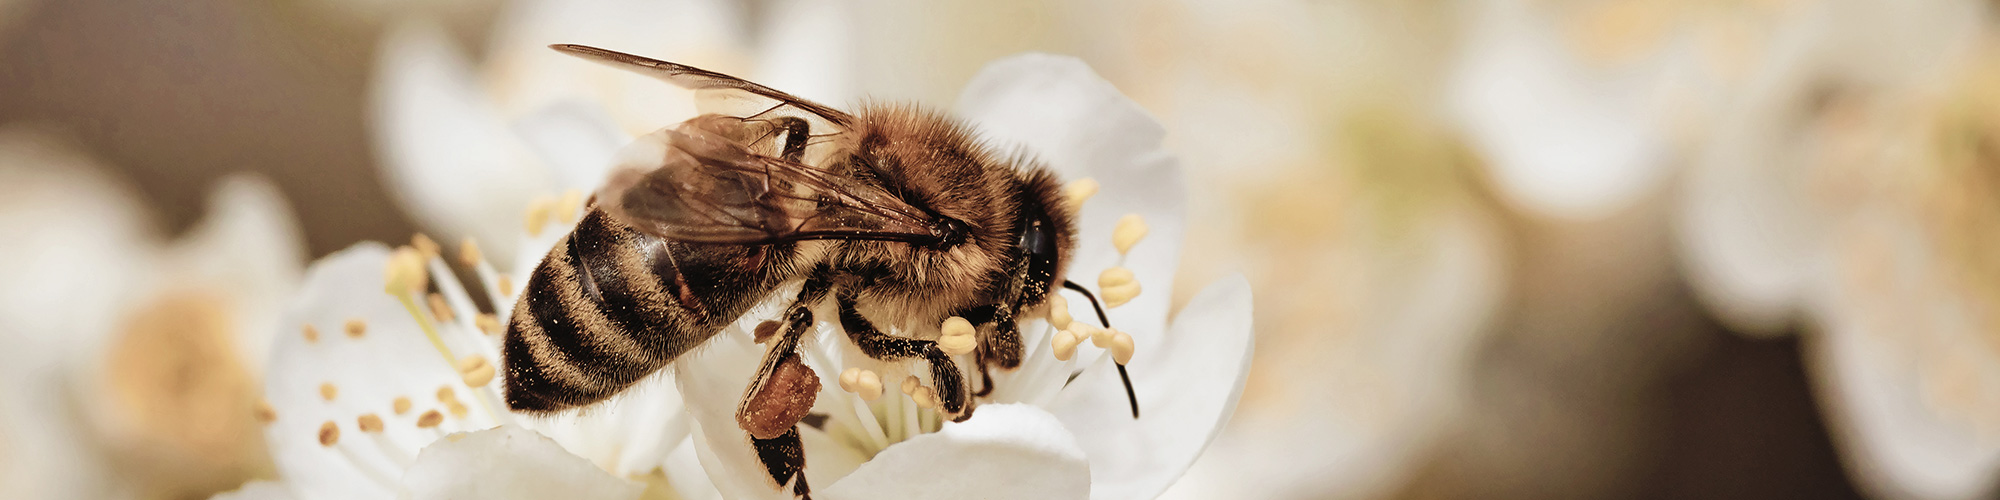 Business Development ist fruchtbar: Biene bestäubt eine Blüte